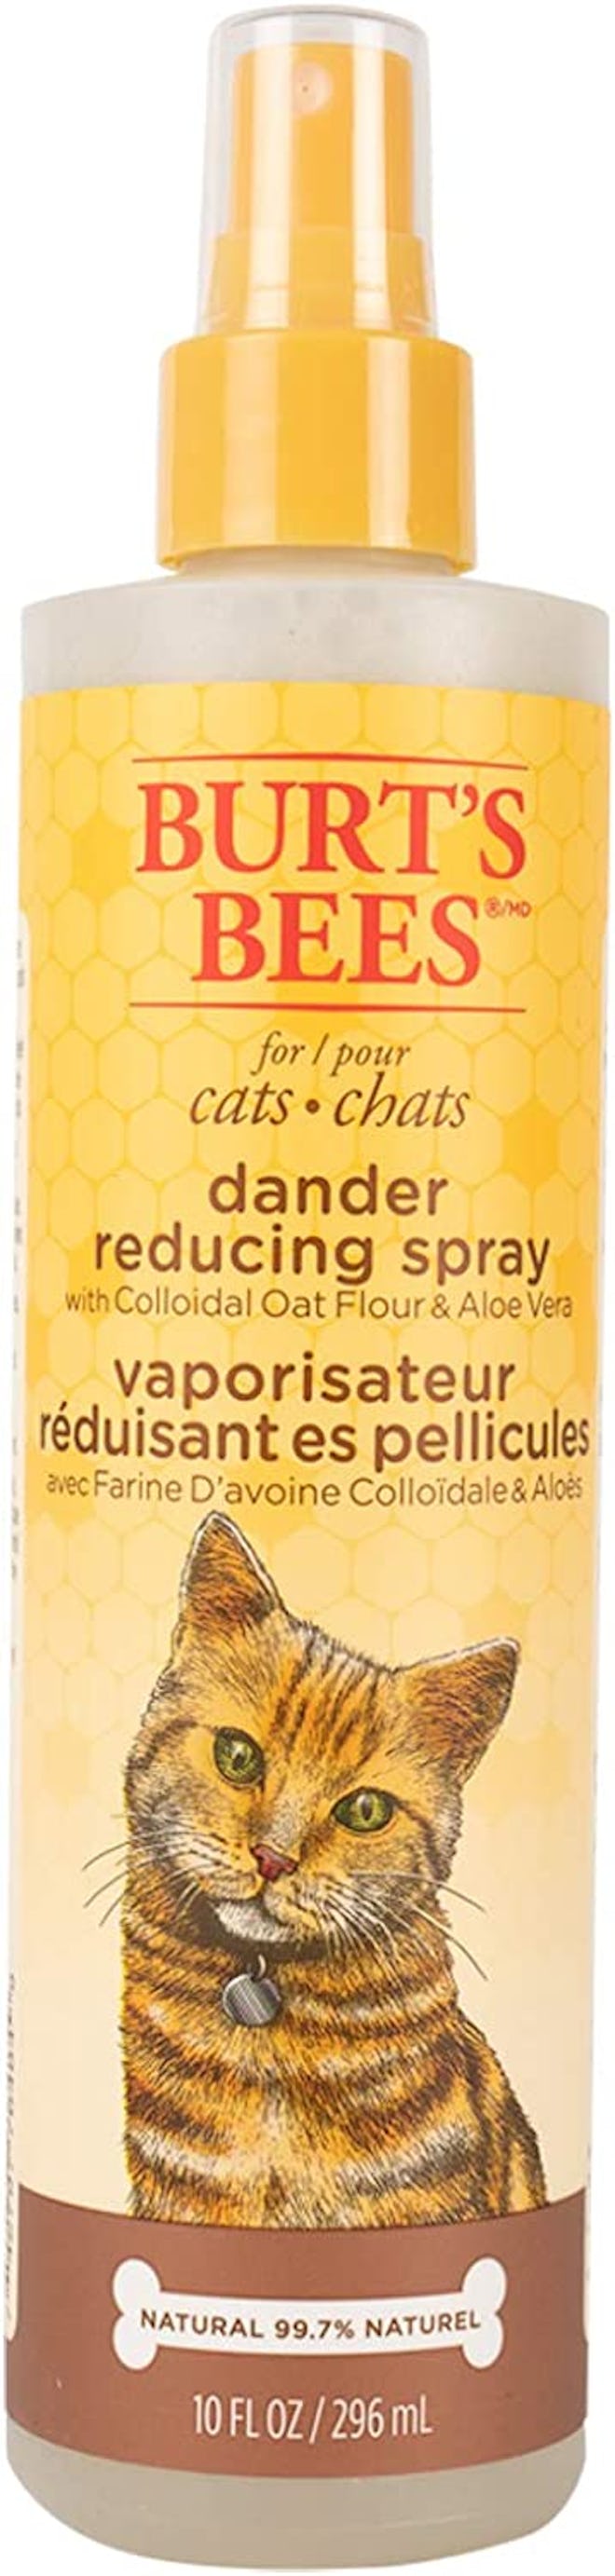 Burt's Bees Natural Dander Reducer Spray